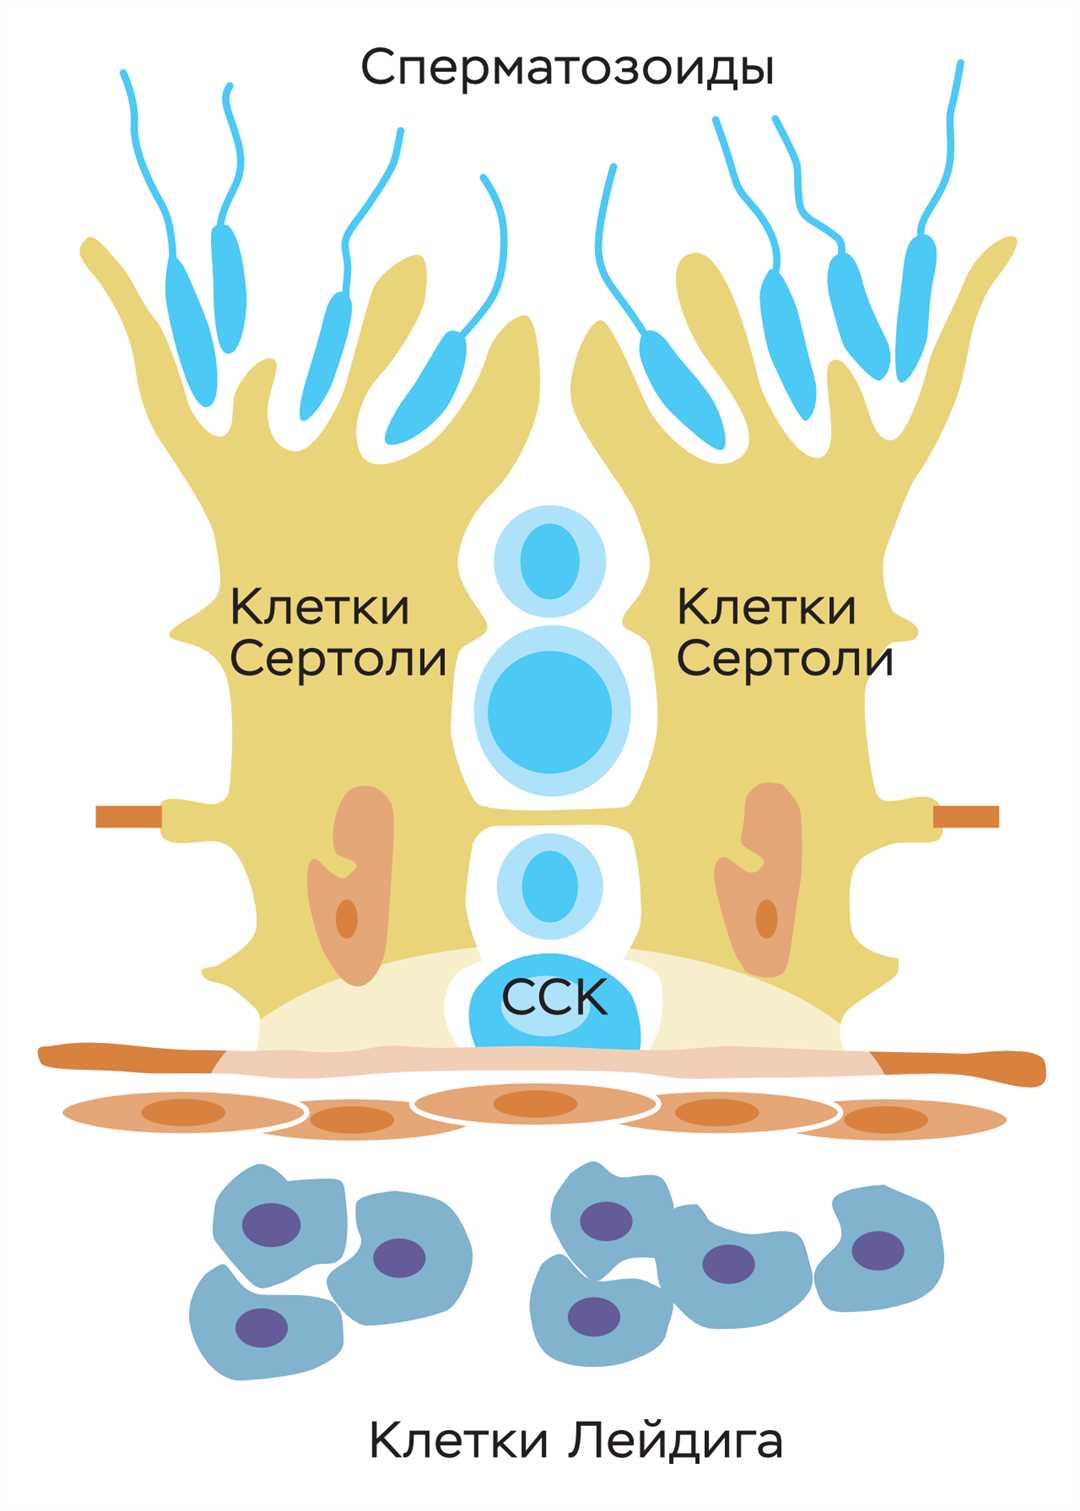 Гемопоэтические и нейрогенные стволовые клетки